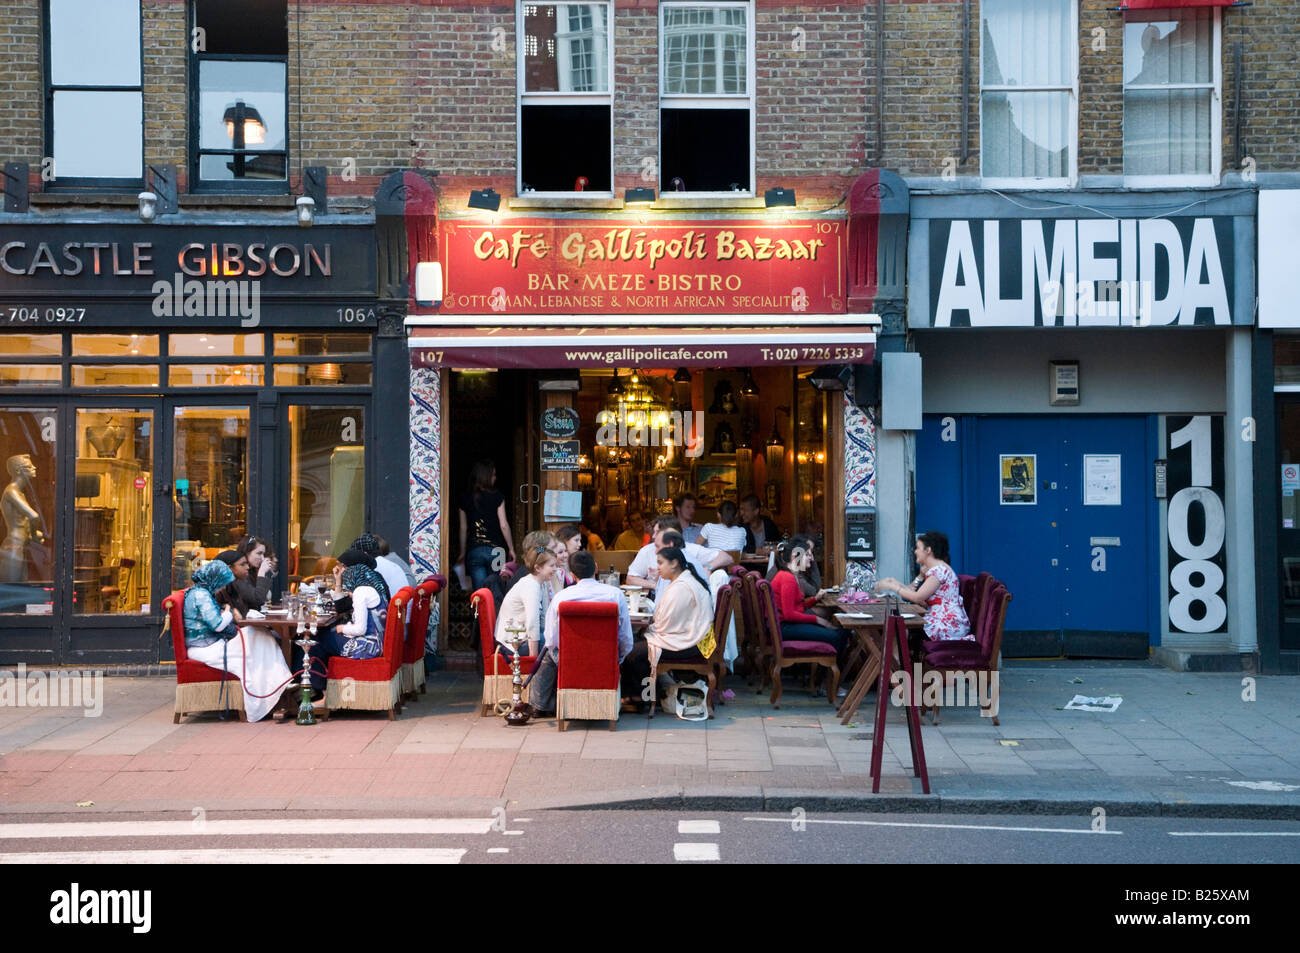 Cafe Gallipoli Bazaar Turkish restaurant on Upper Street in Islington London, UK Stock Photo